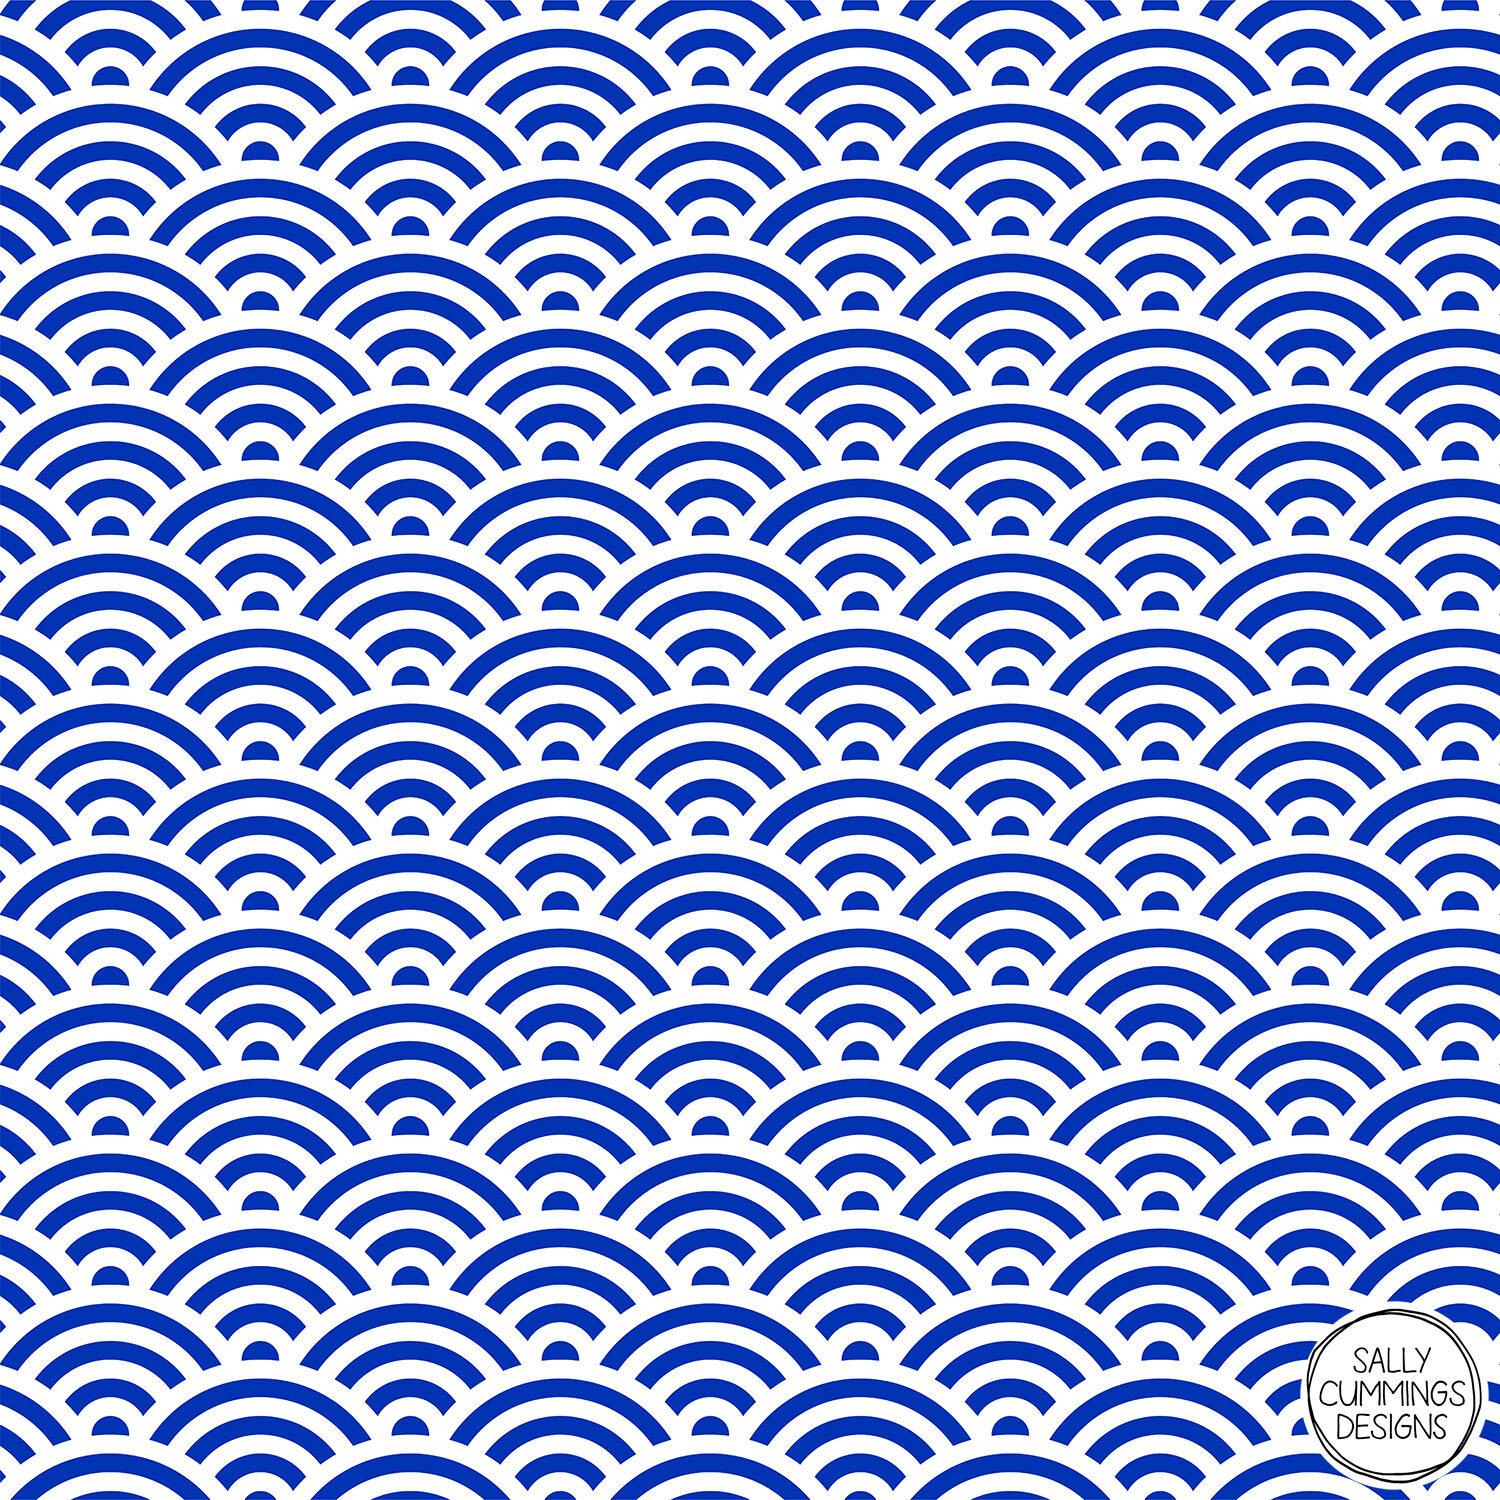 Sally Cummings Designs - Dark Blue Seigaiha Wave Crest Pattern